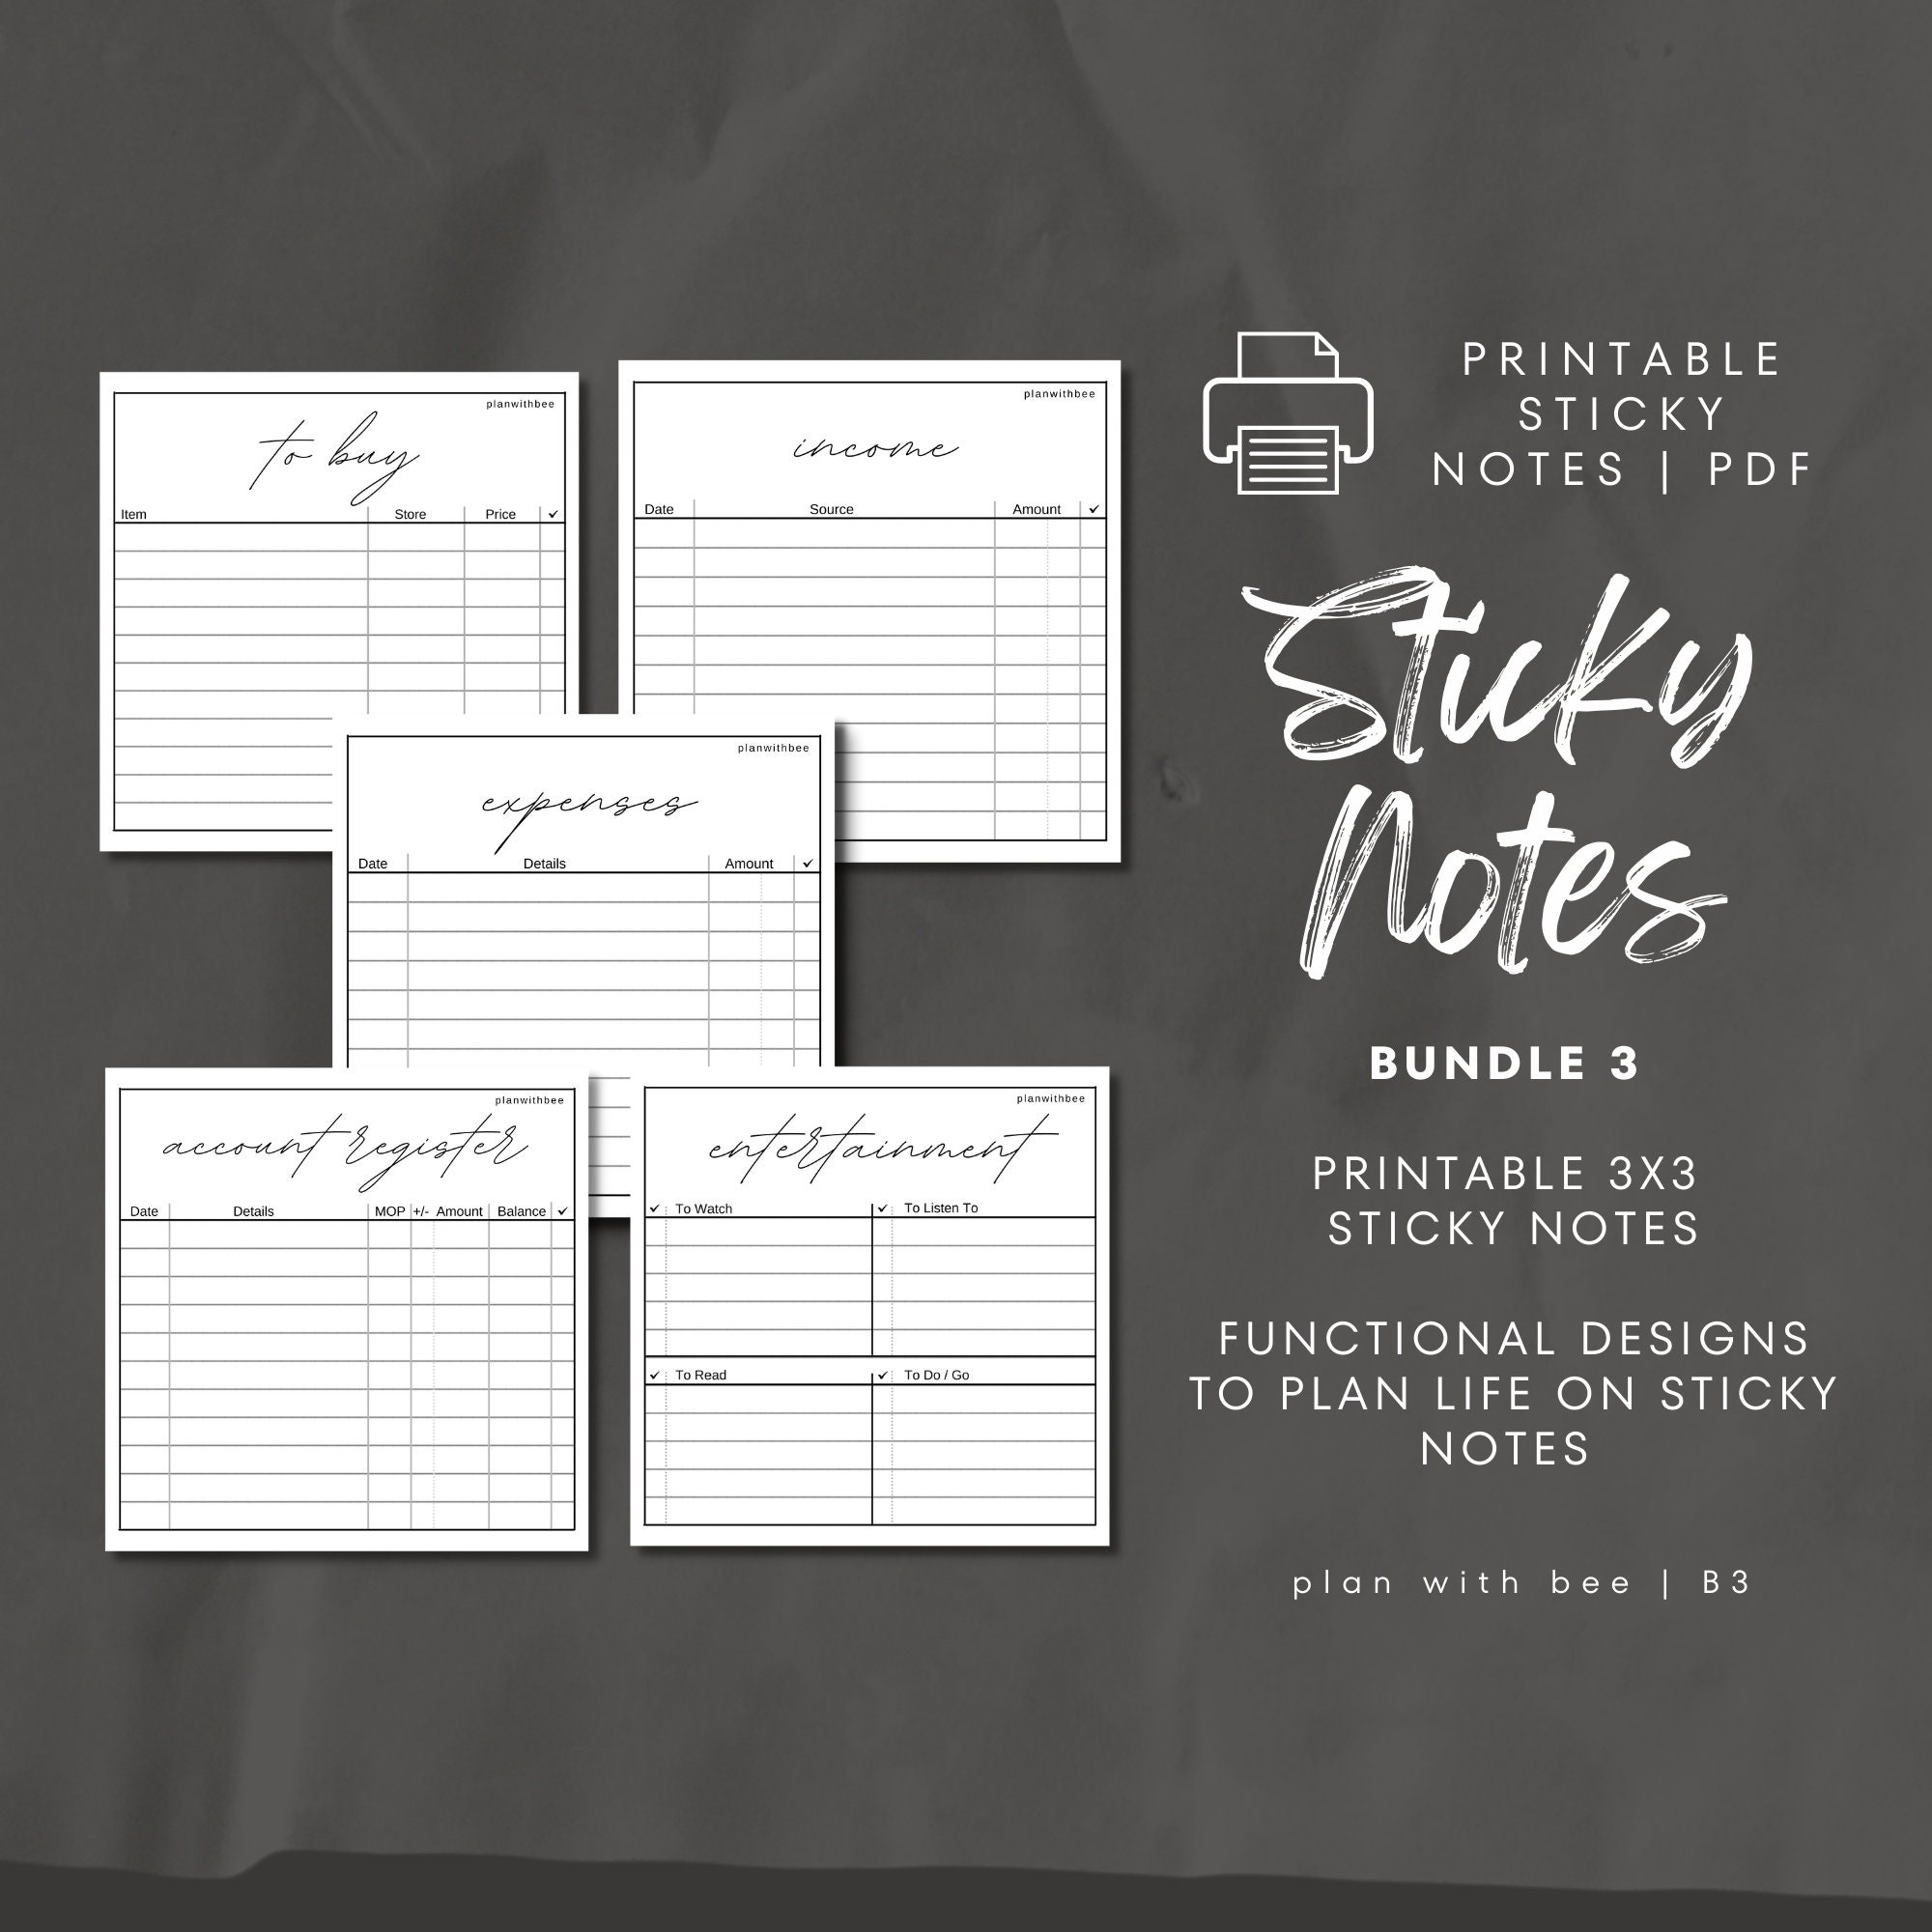 grundlæggende Illustrer Ulykke Printable Sticky Notes Bundle 3 to Buy Expenses Income - Etsy